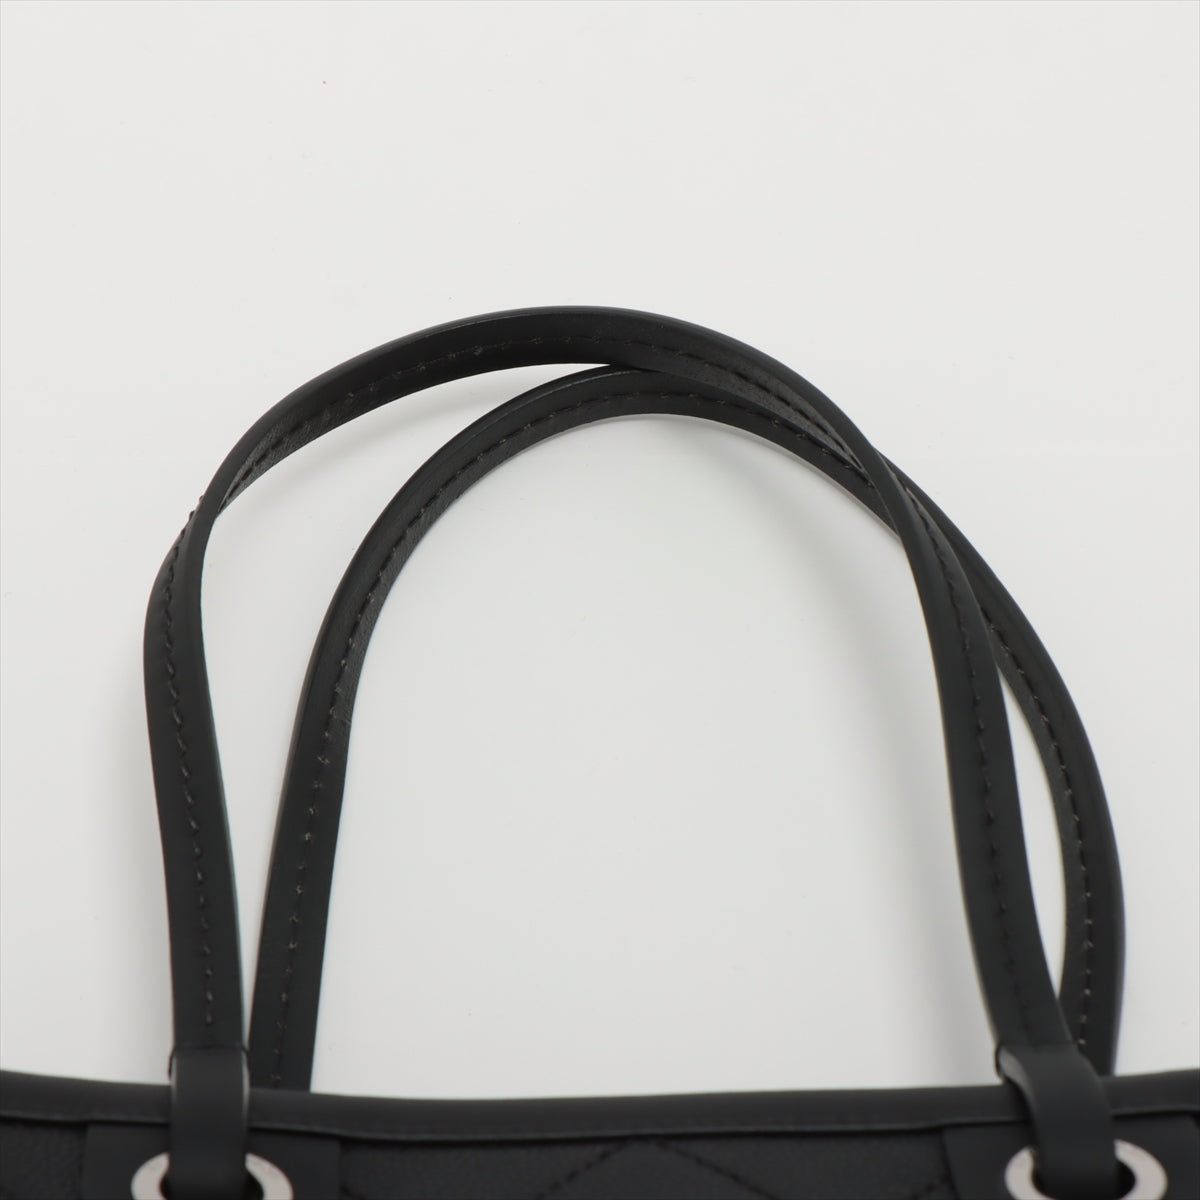 シャネル トートバッグ ワイルドステッチ  ブラック レザー CHANEL  | ハンドバッグ バック レディース ファッション 黒 鞄 ハイブランド カバン キルティング ステッチ ABランク